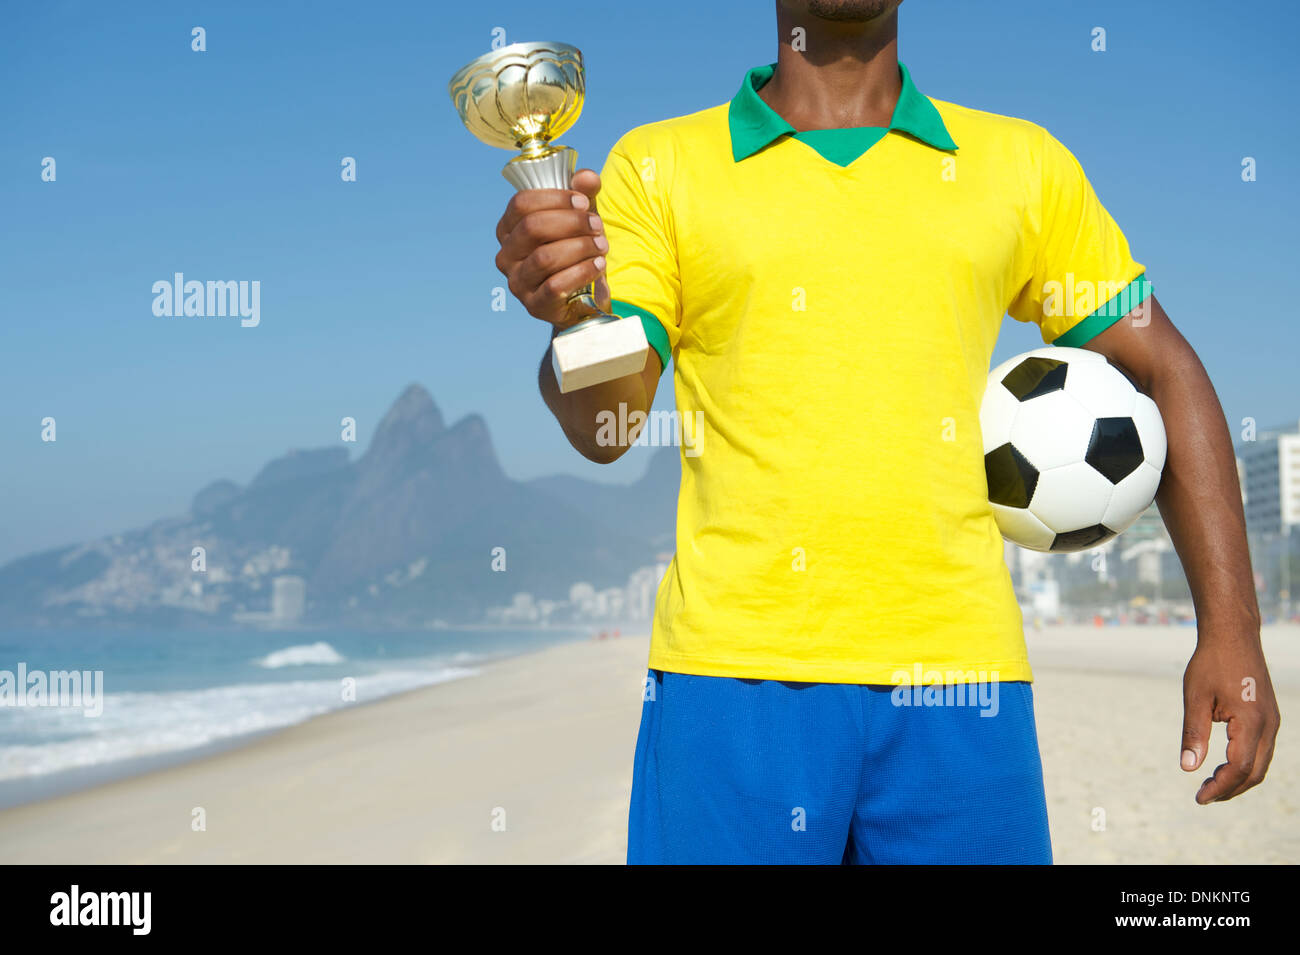 Champion Brazilian soccer player holding trophy et du football de plage d'Ipanema Rio de Janeiro Brésil Banque D'Images